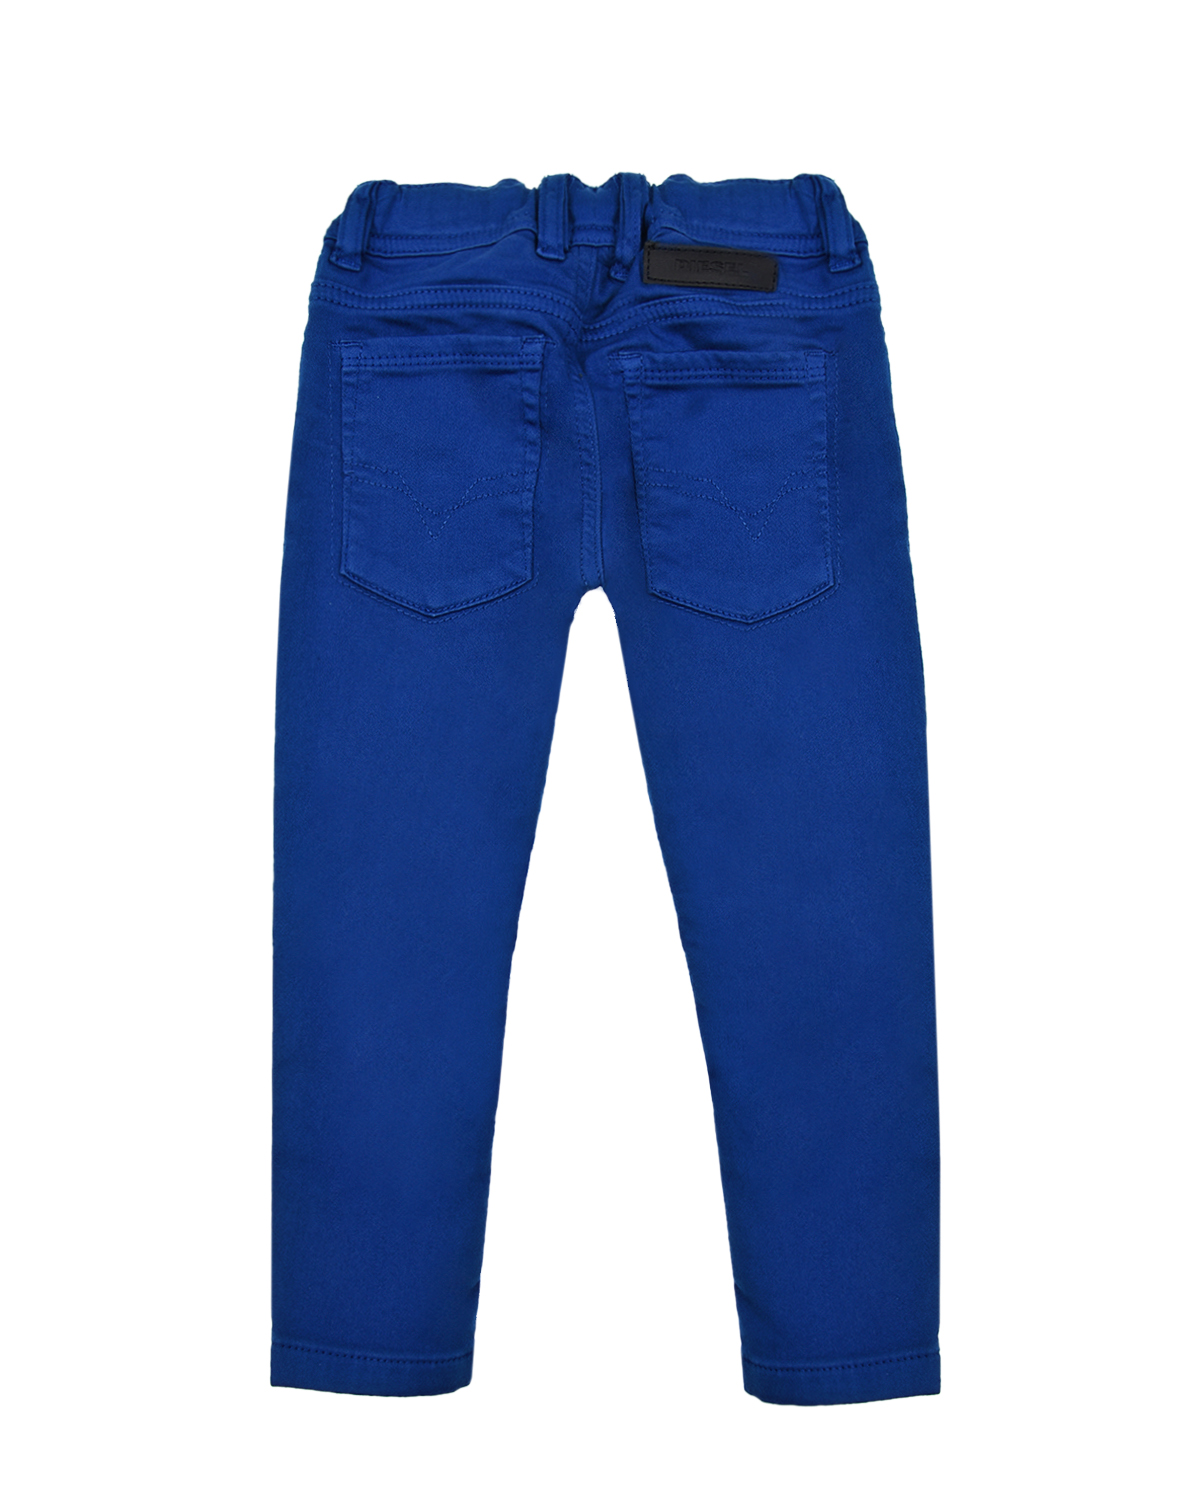 Синие джинсовые джоггеры Diesel детские, размер 80, цвет синий - фото 2